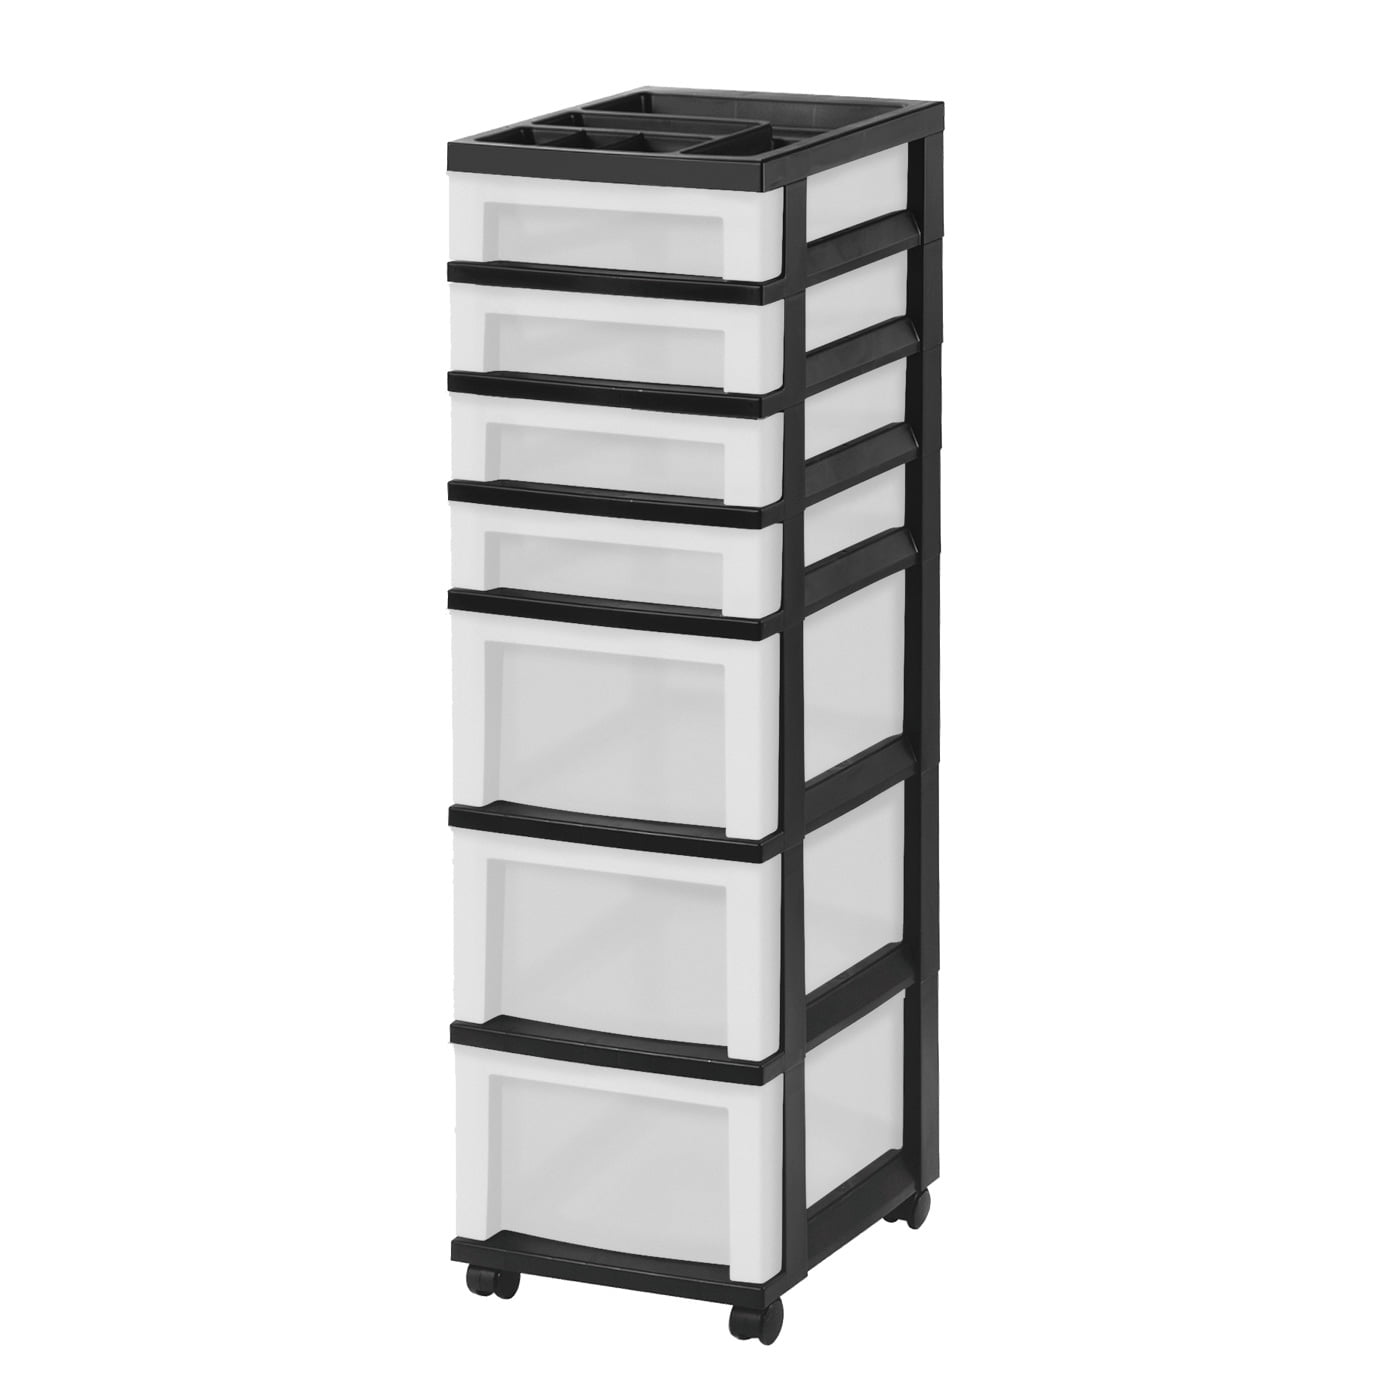 Black IRIS 7-Drawer Rolling Storage Cart with Organizer Top 